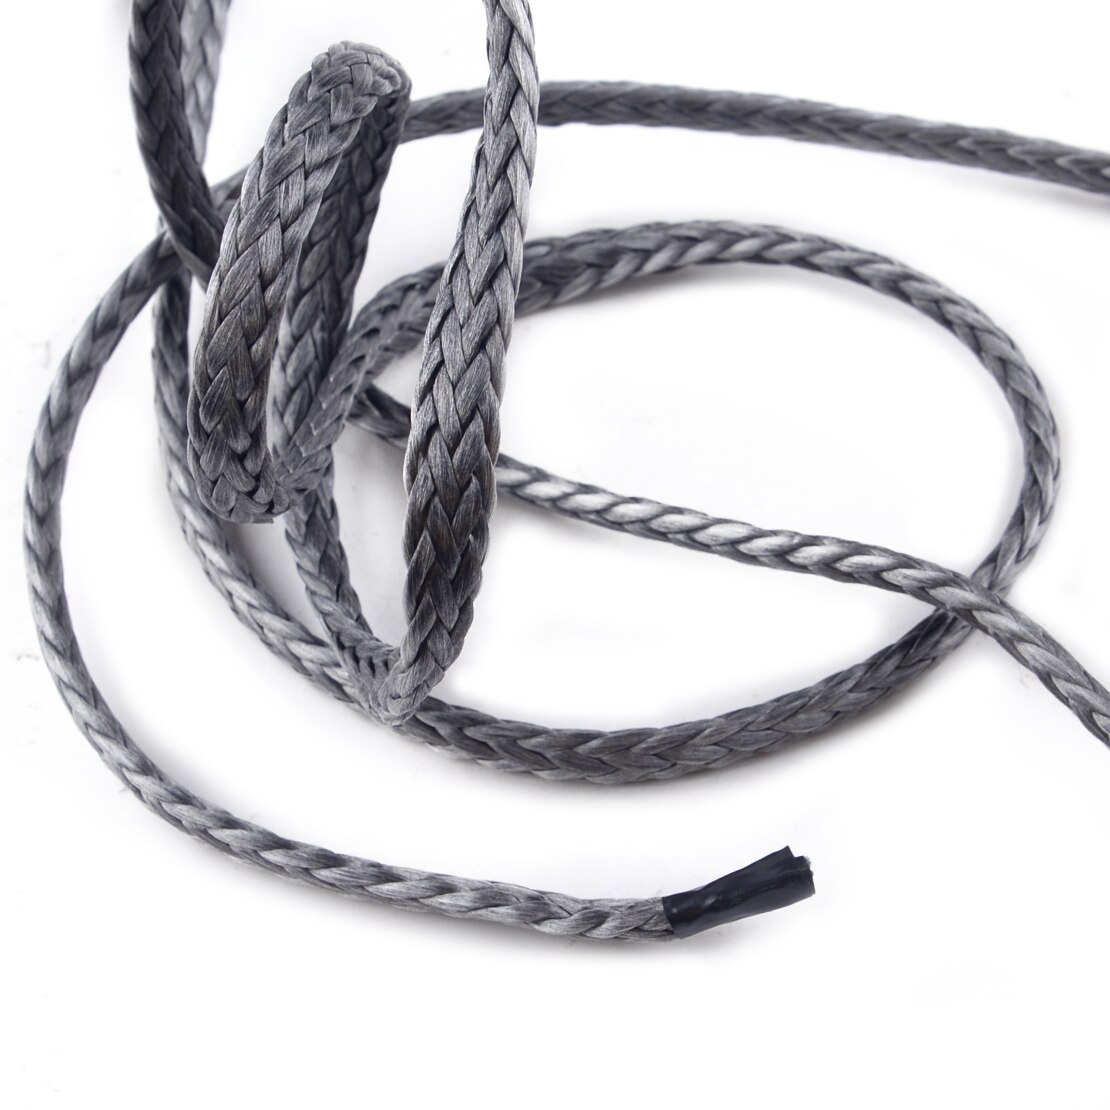 Beler syntetiske fibre atv lastbil spil reb wire linje træk slæb kabel bugsering reb syntetiske fibre med kappe krog 7700 lbs